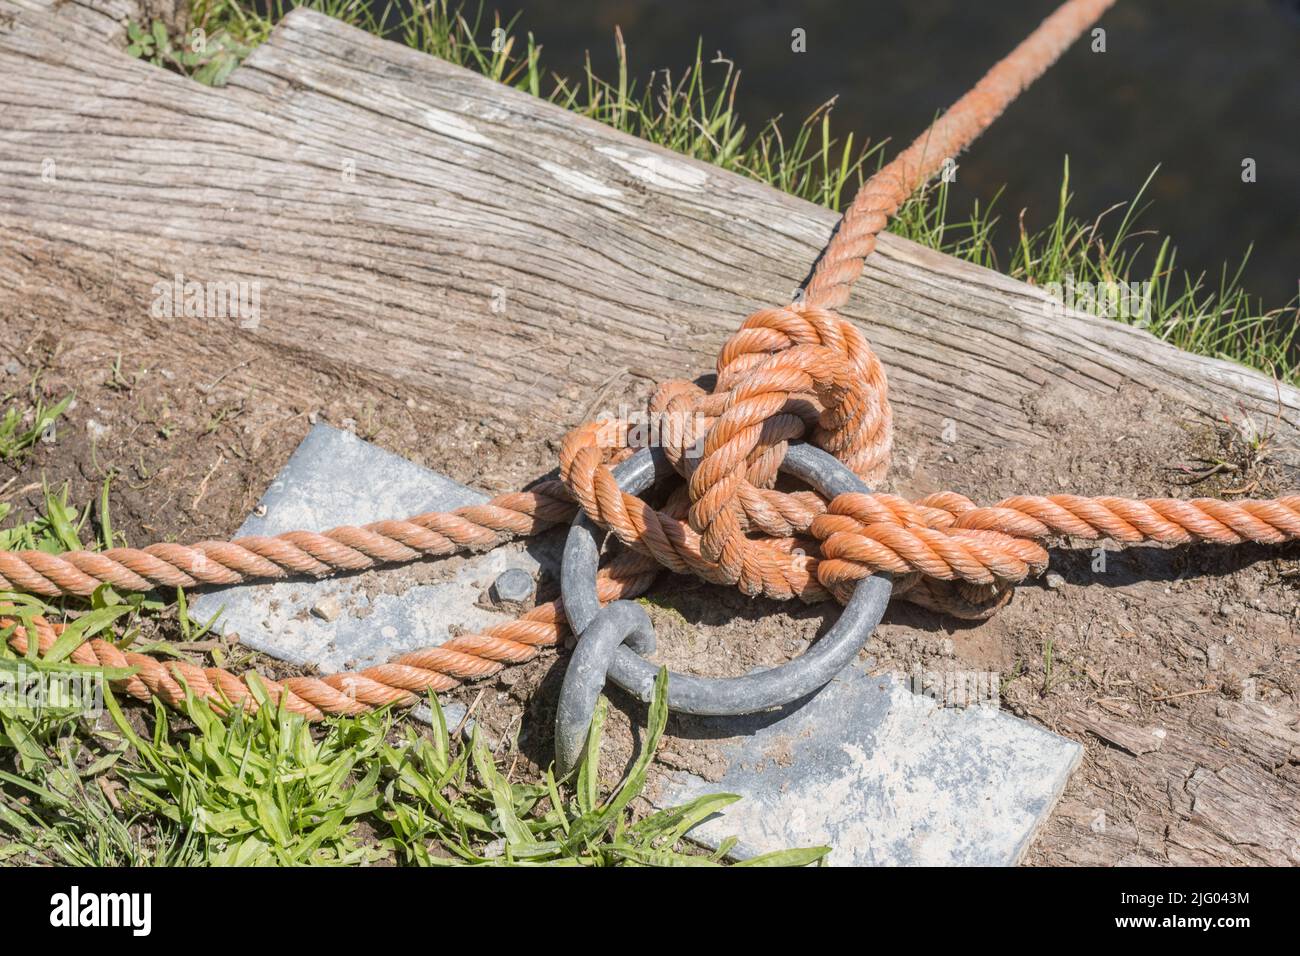 Muelle soleado con cuerda de amarre de barco unida a anillo de amarre de metal. Para las actividades de navegación y navegación en el Reino Unido, algo seguro, atado, atado. Foto de stock